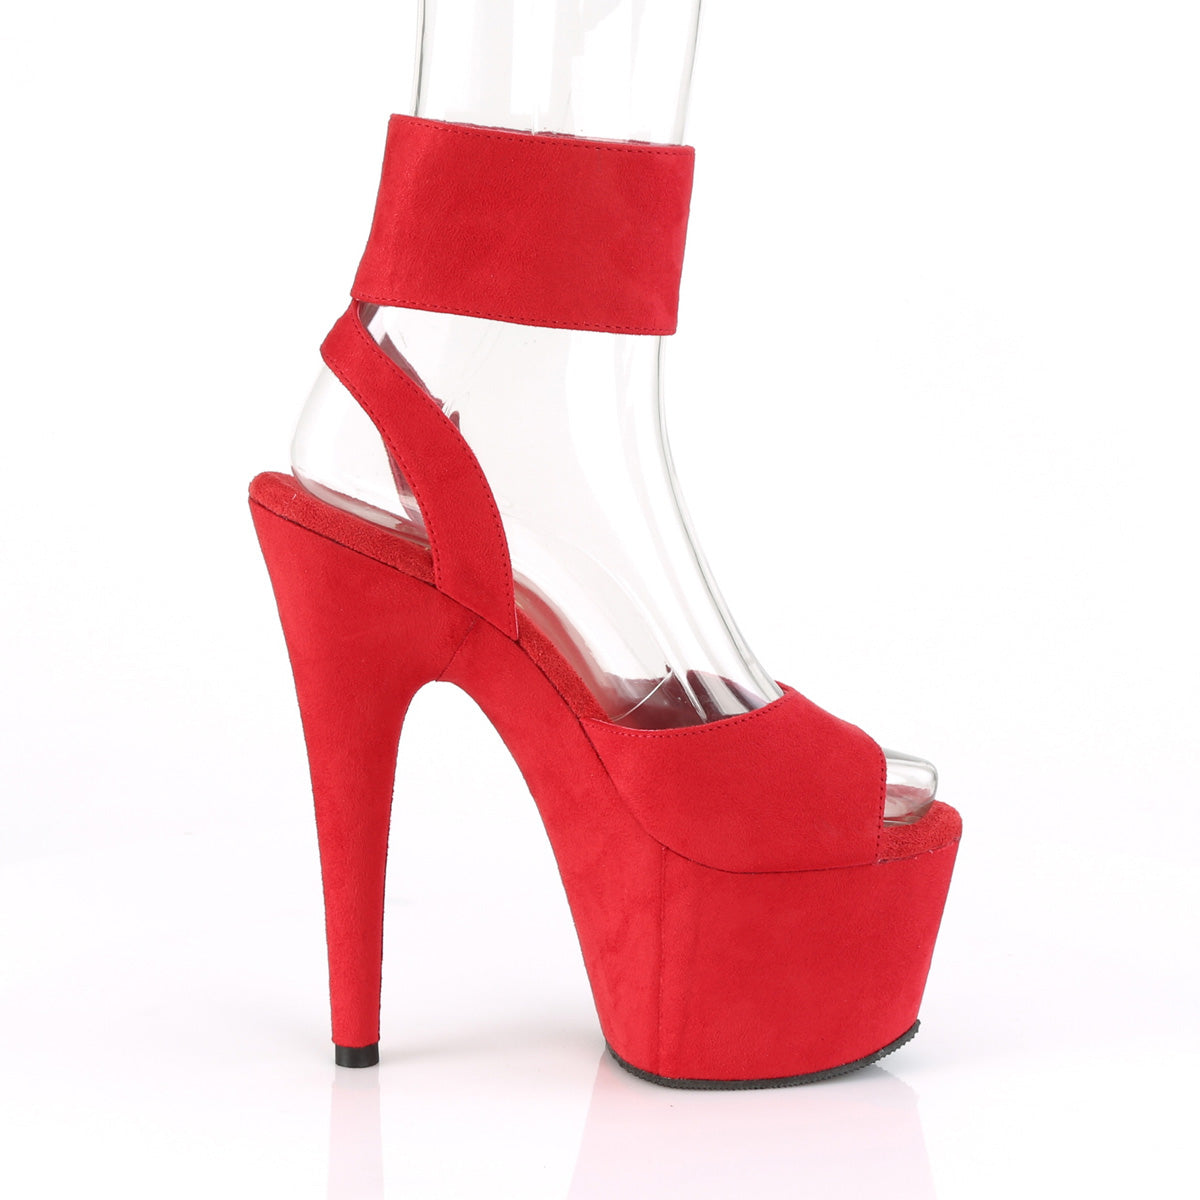 Pleaser Sandales pour femmes ADORE-791fs rouge en forme de faux daim / daim en faux rouge